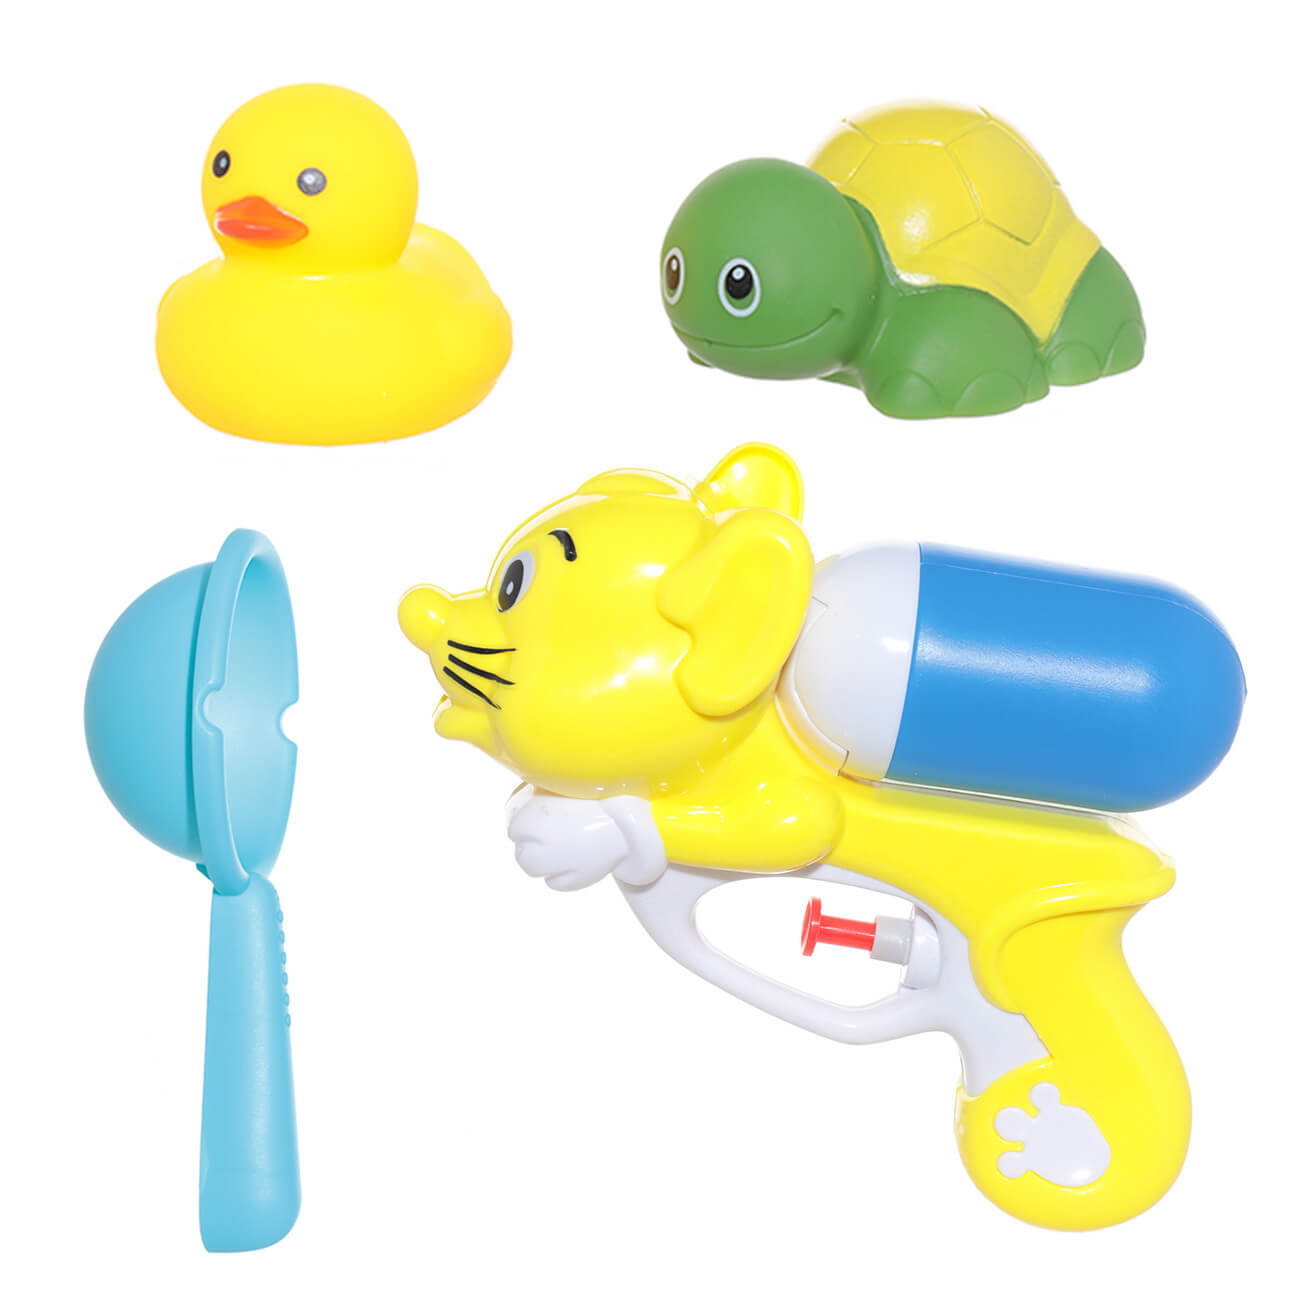 Набор игрушек для купания, 4 пр, водный пистолет/игрушки, резина/пластик, желтый, Duck скрипучие игрушки для собак dog chew toy